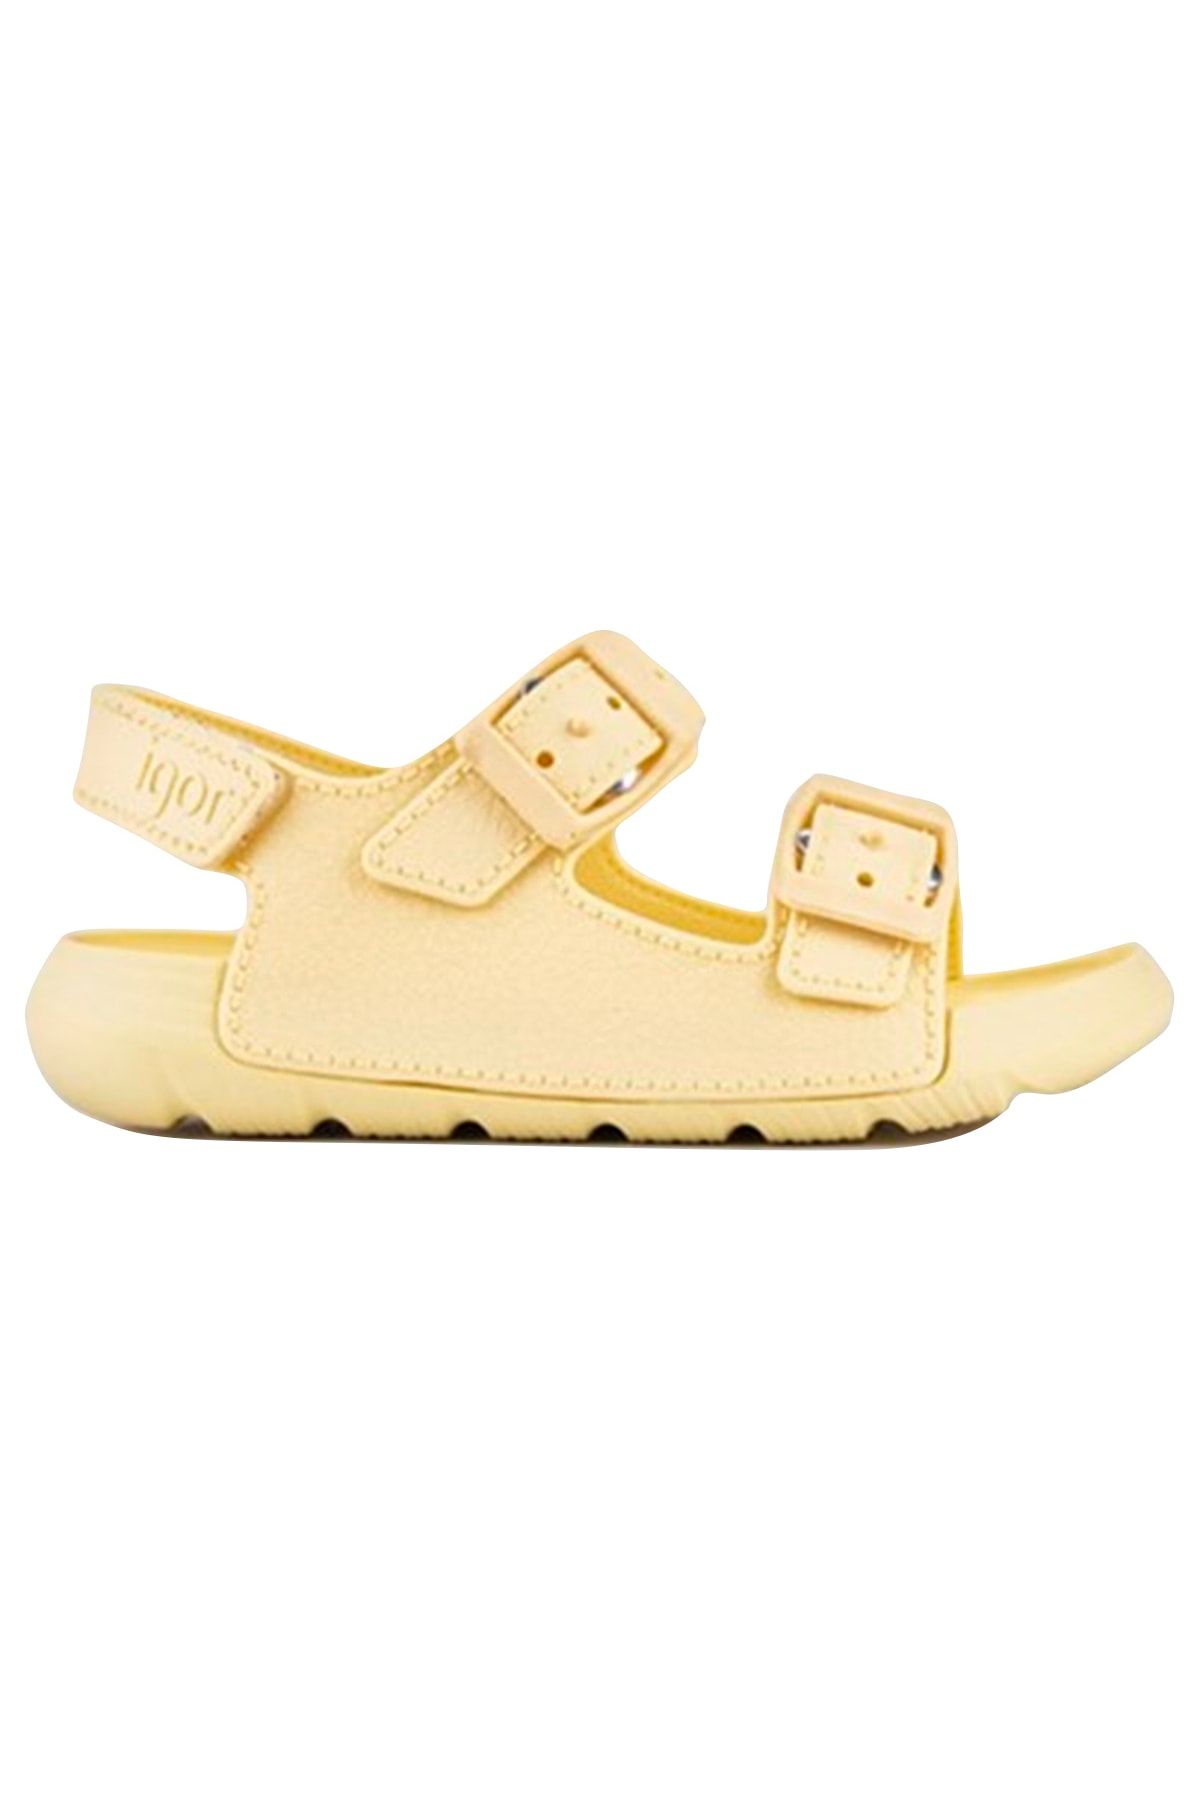 IGOR Maui Mc Çocuk Sarı Günlük Stil Sandalet S10298-228